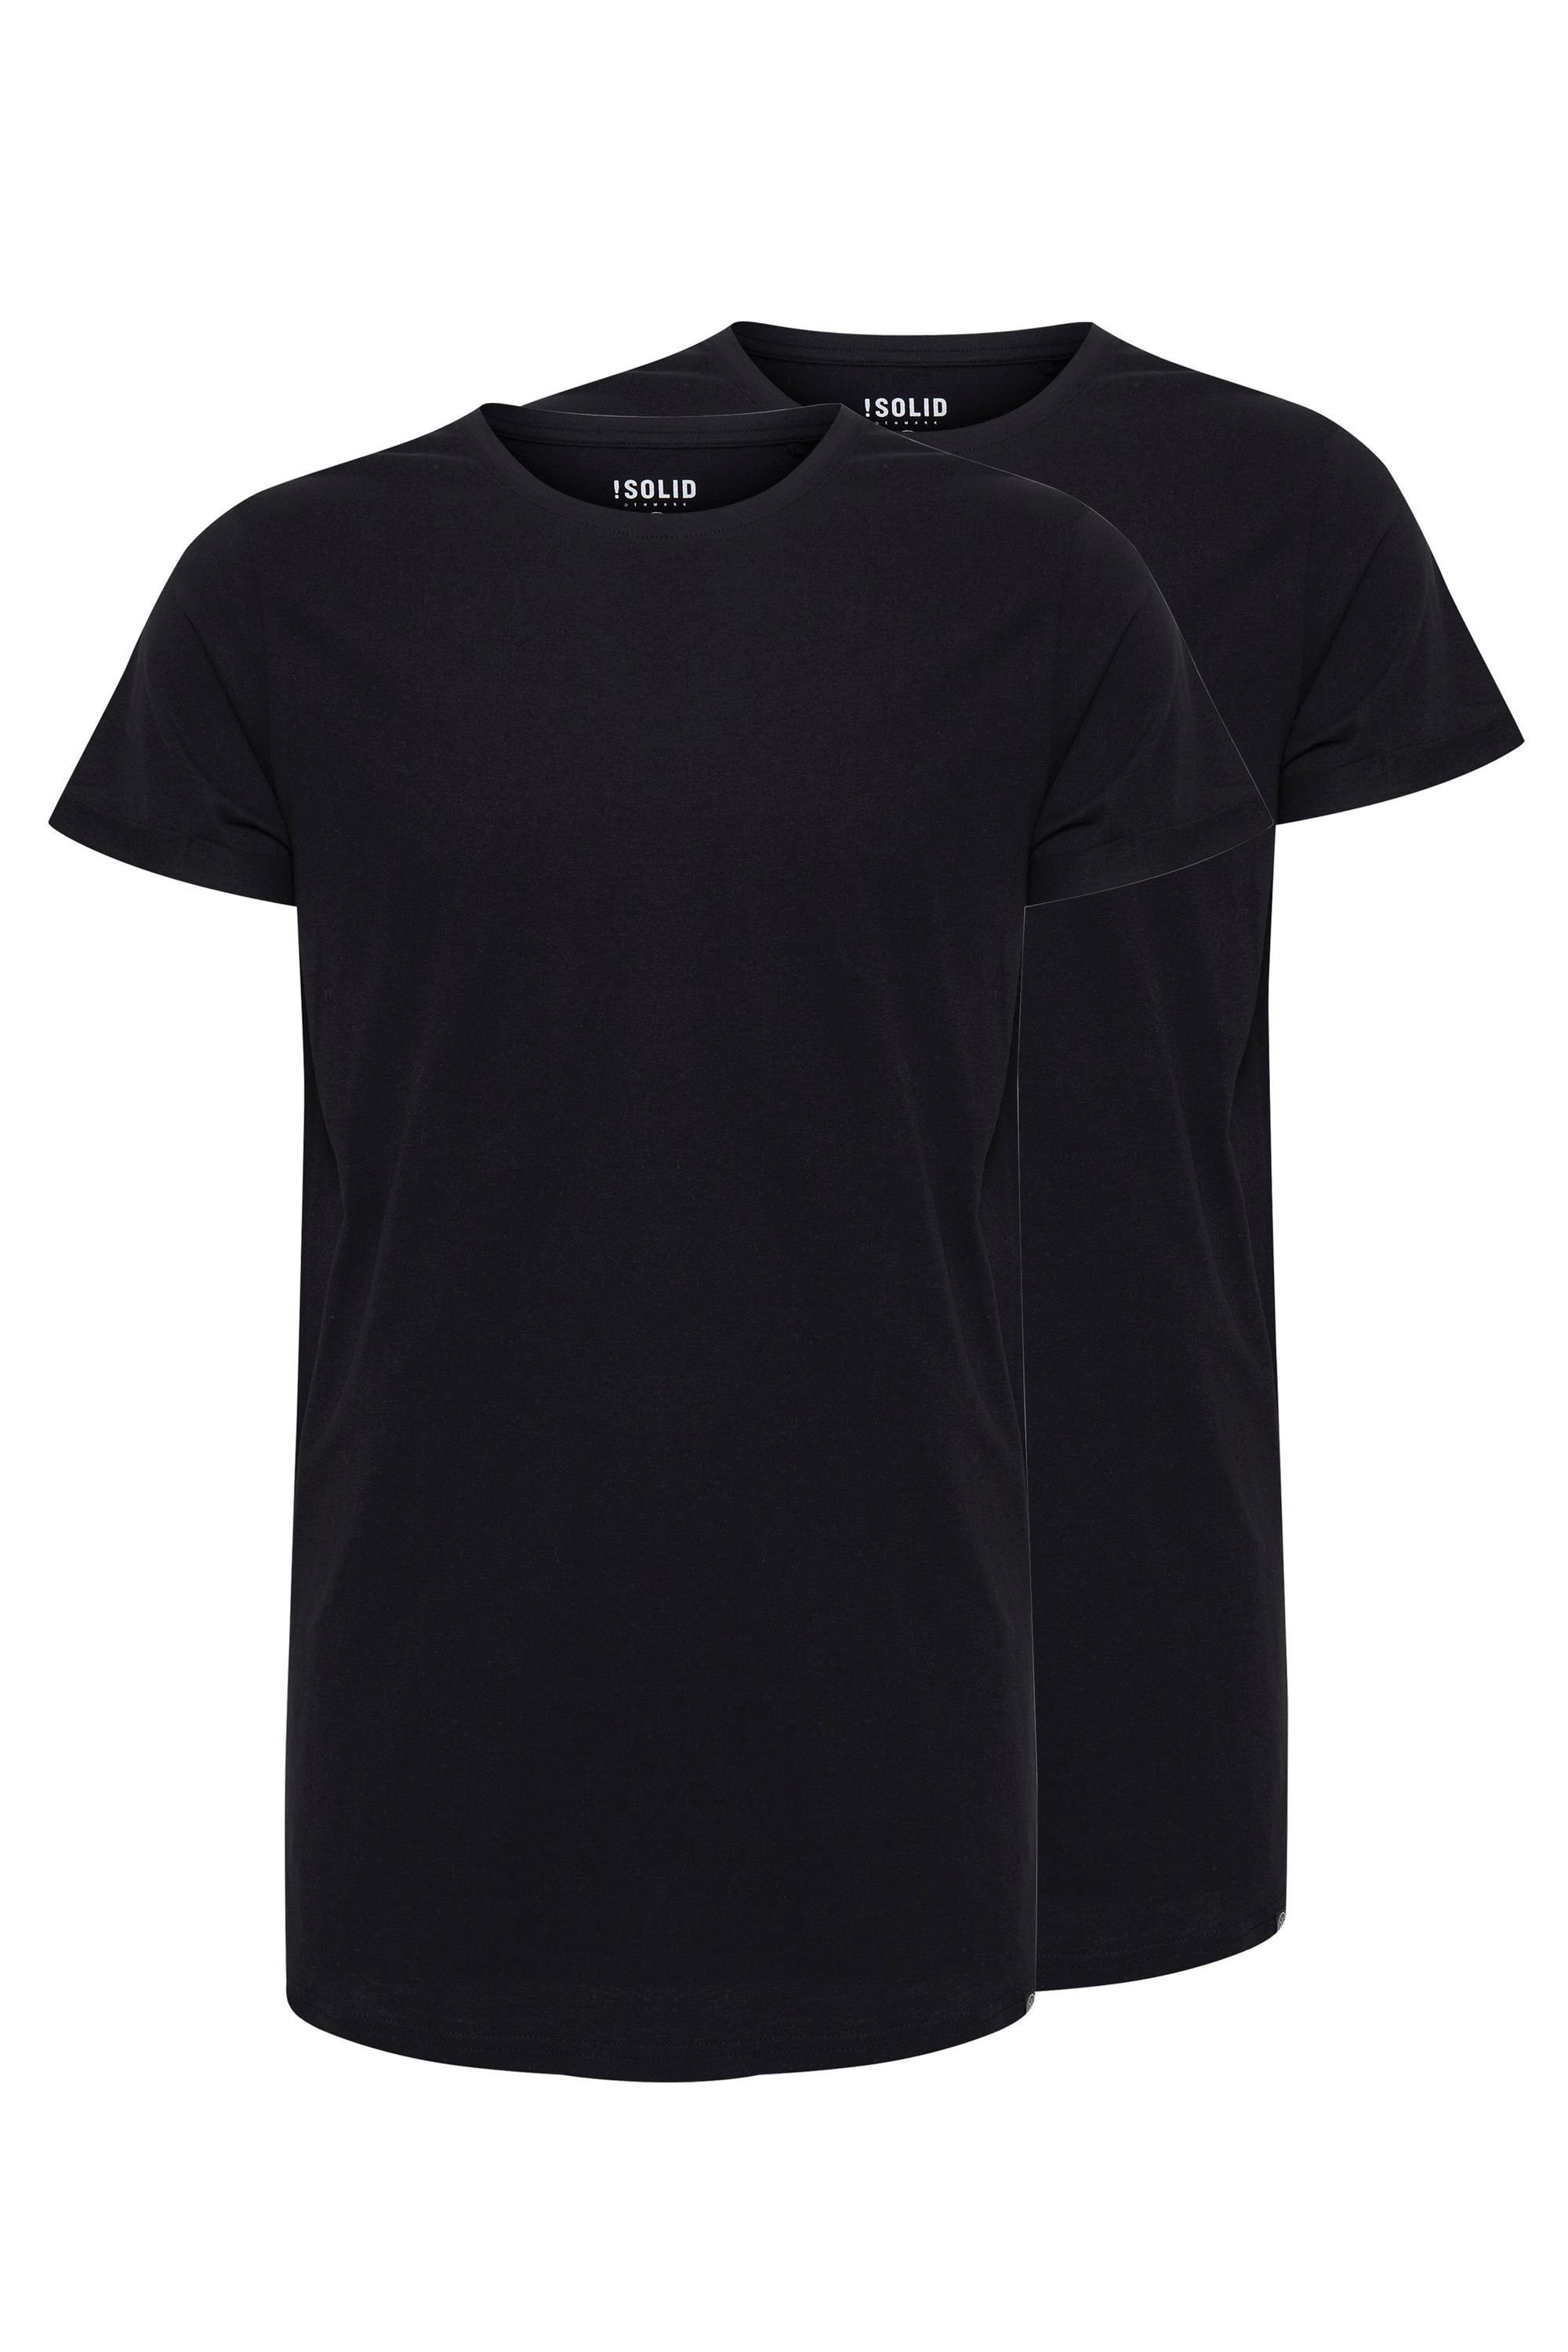 !Solid Longshirt SDLongo T-Shirt im 2er-Pack Black (9000)